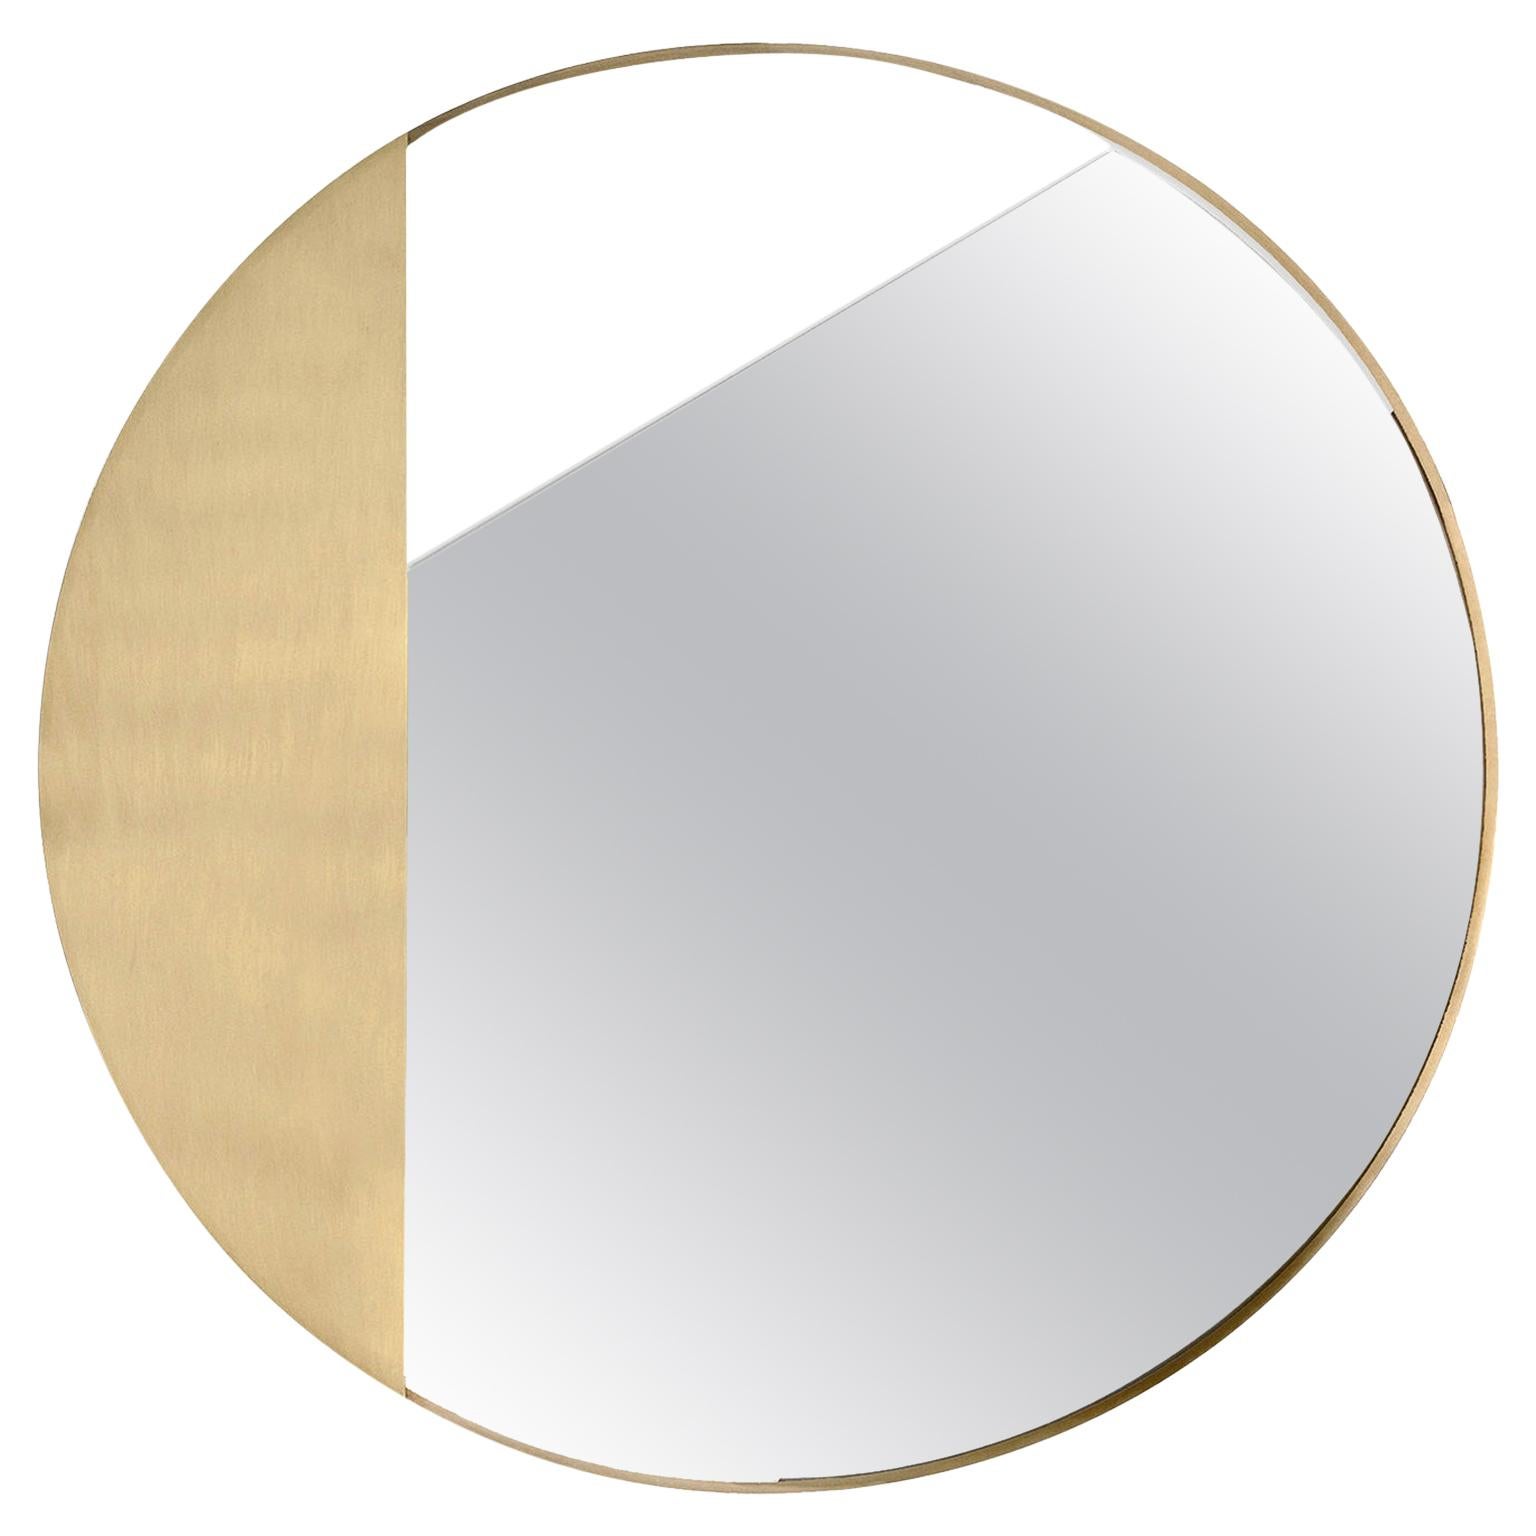 Contemporary Limited Edition Brass Mirror, Revolution 90 V1 by Edizione Limitata For Sale